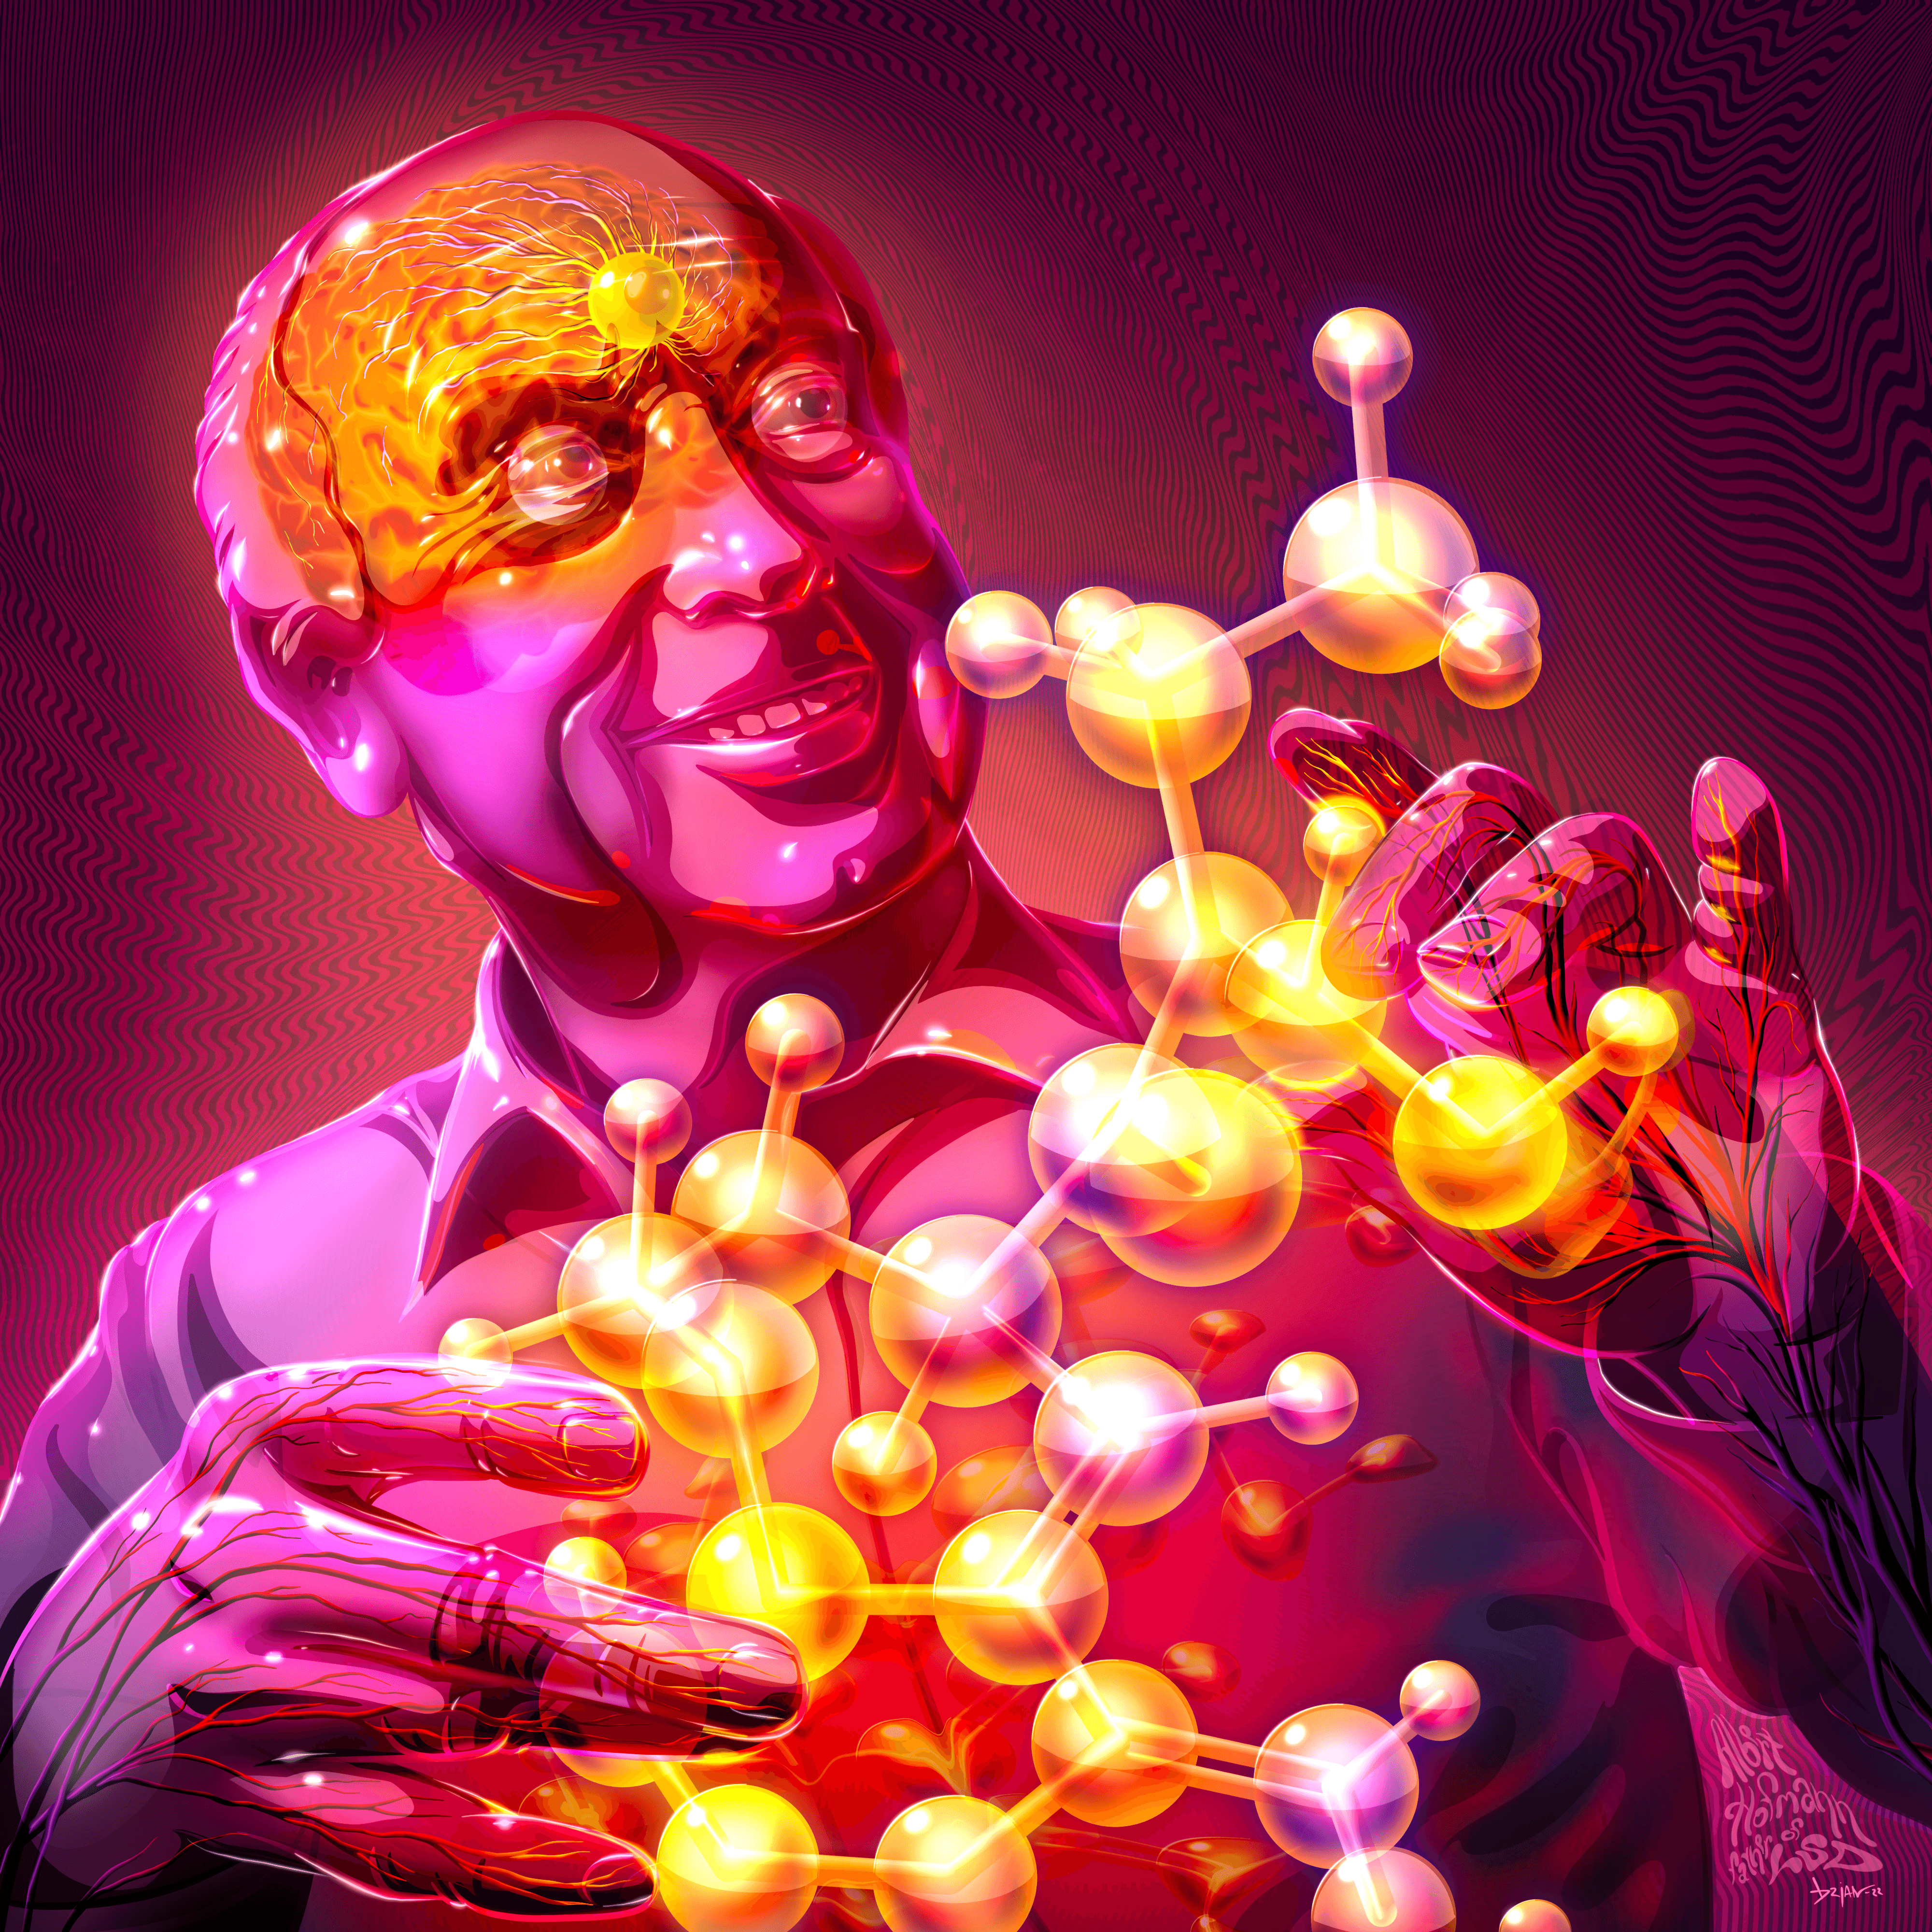 Albert Hofmann, Father of LSD